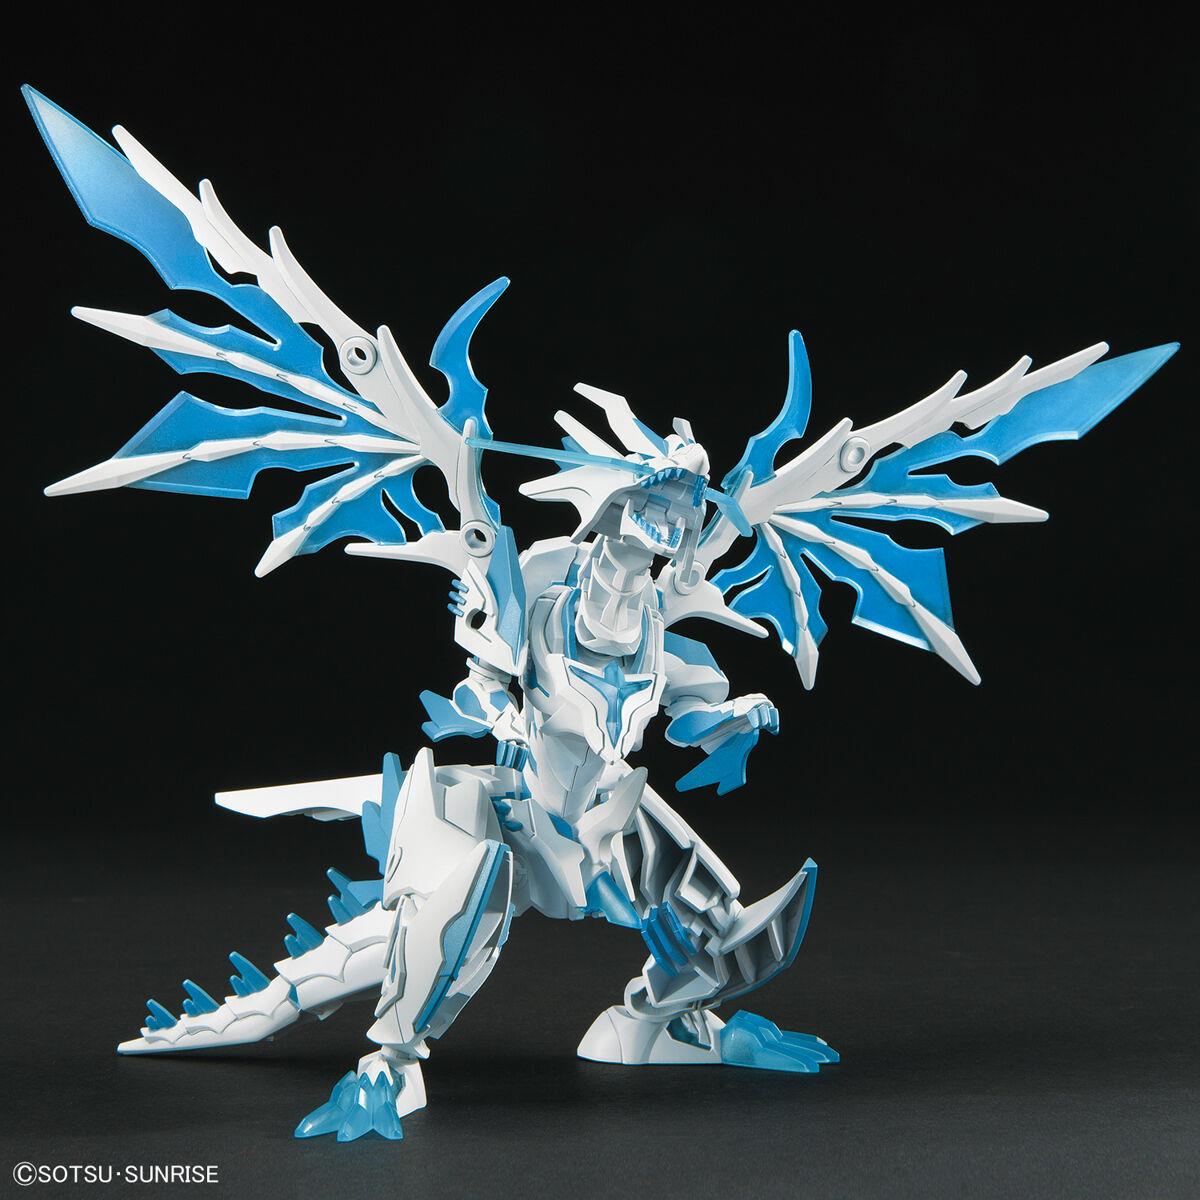 Gundam: Shining Grasper Dragon SDW Heroes Model